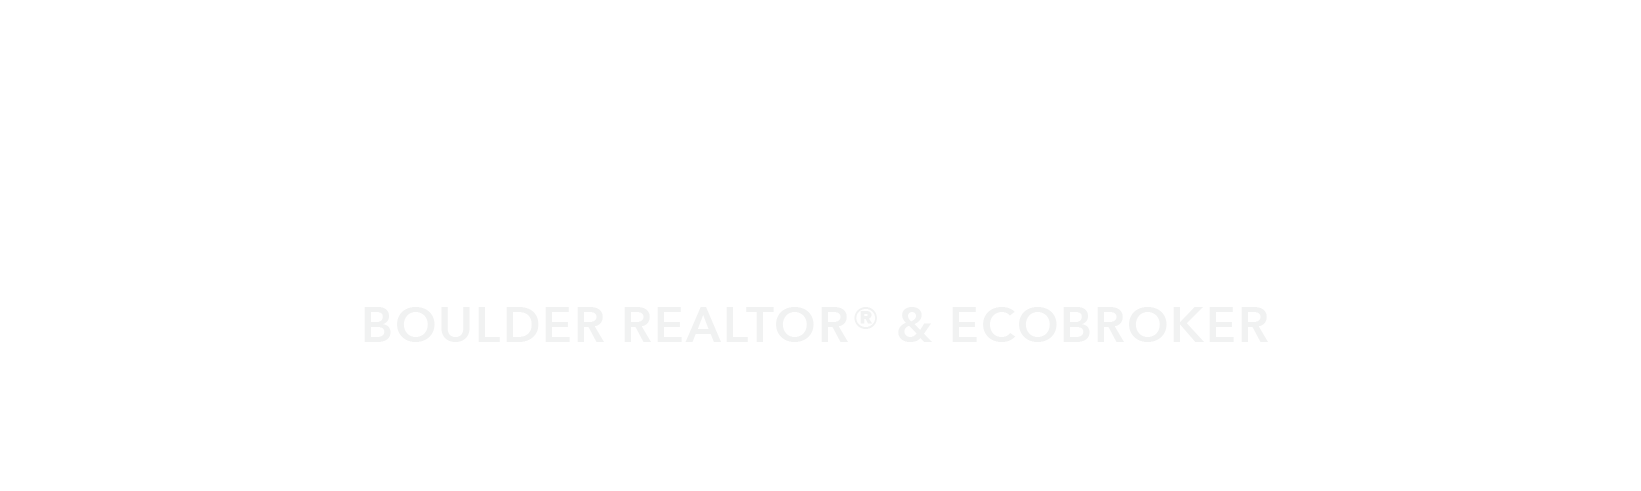 John Farley REALTOR® at Compass Boulder Logo